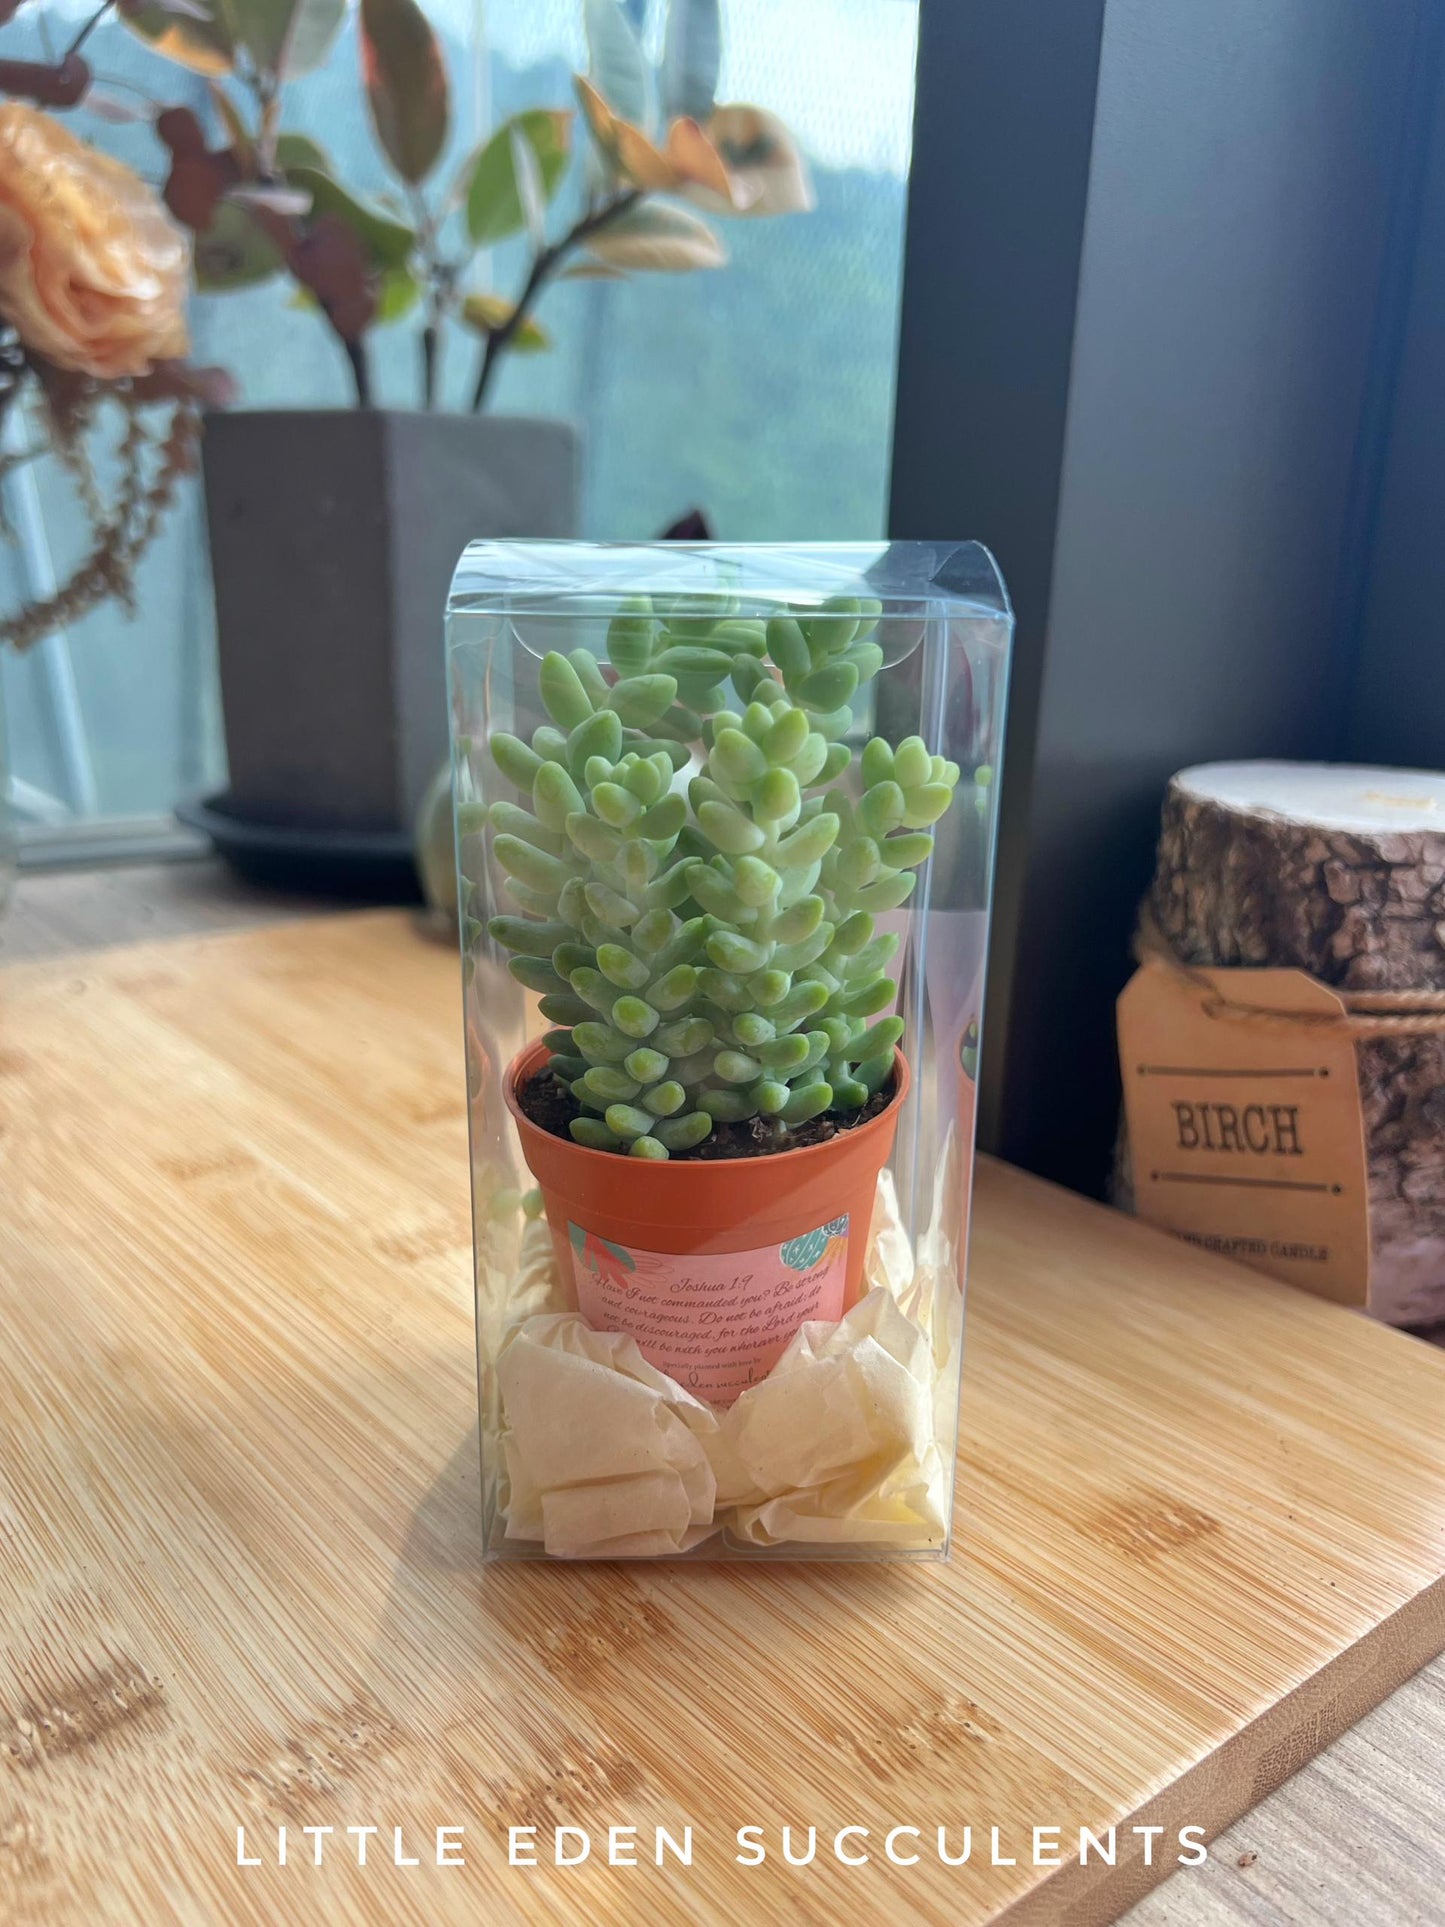 Single Succulent in PVC Box - Door Gift